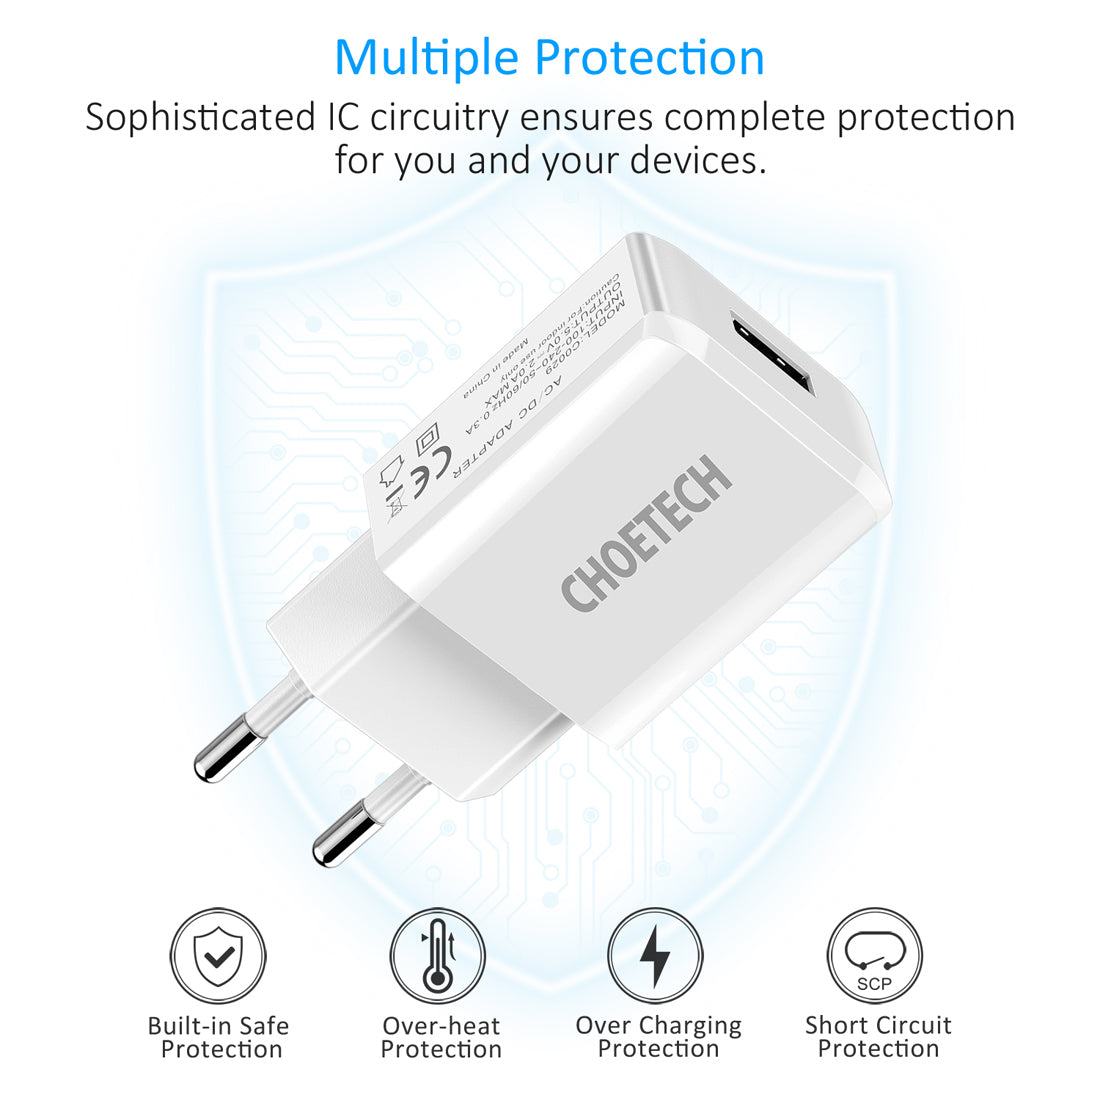 C0029 CHOETECH USB Wandstecker 5V 2A AC Netzteil Kompatibel mit iPhone, iPad, Samsung, Huawei, Tablet und mehr